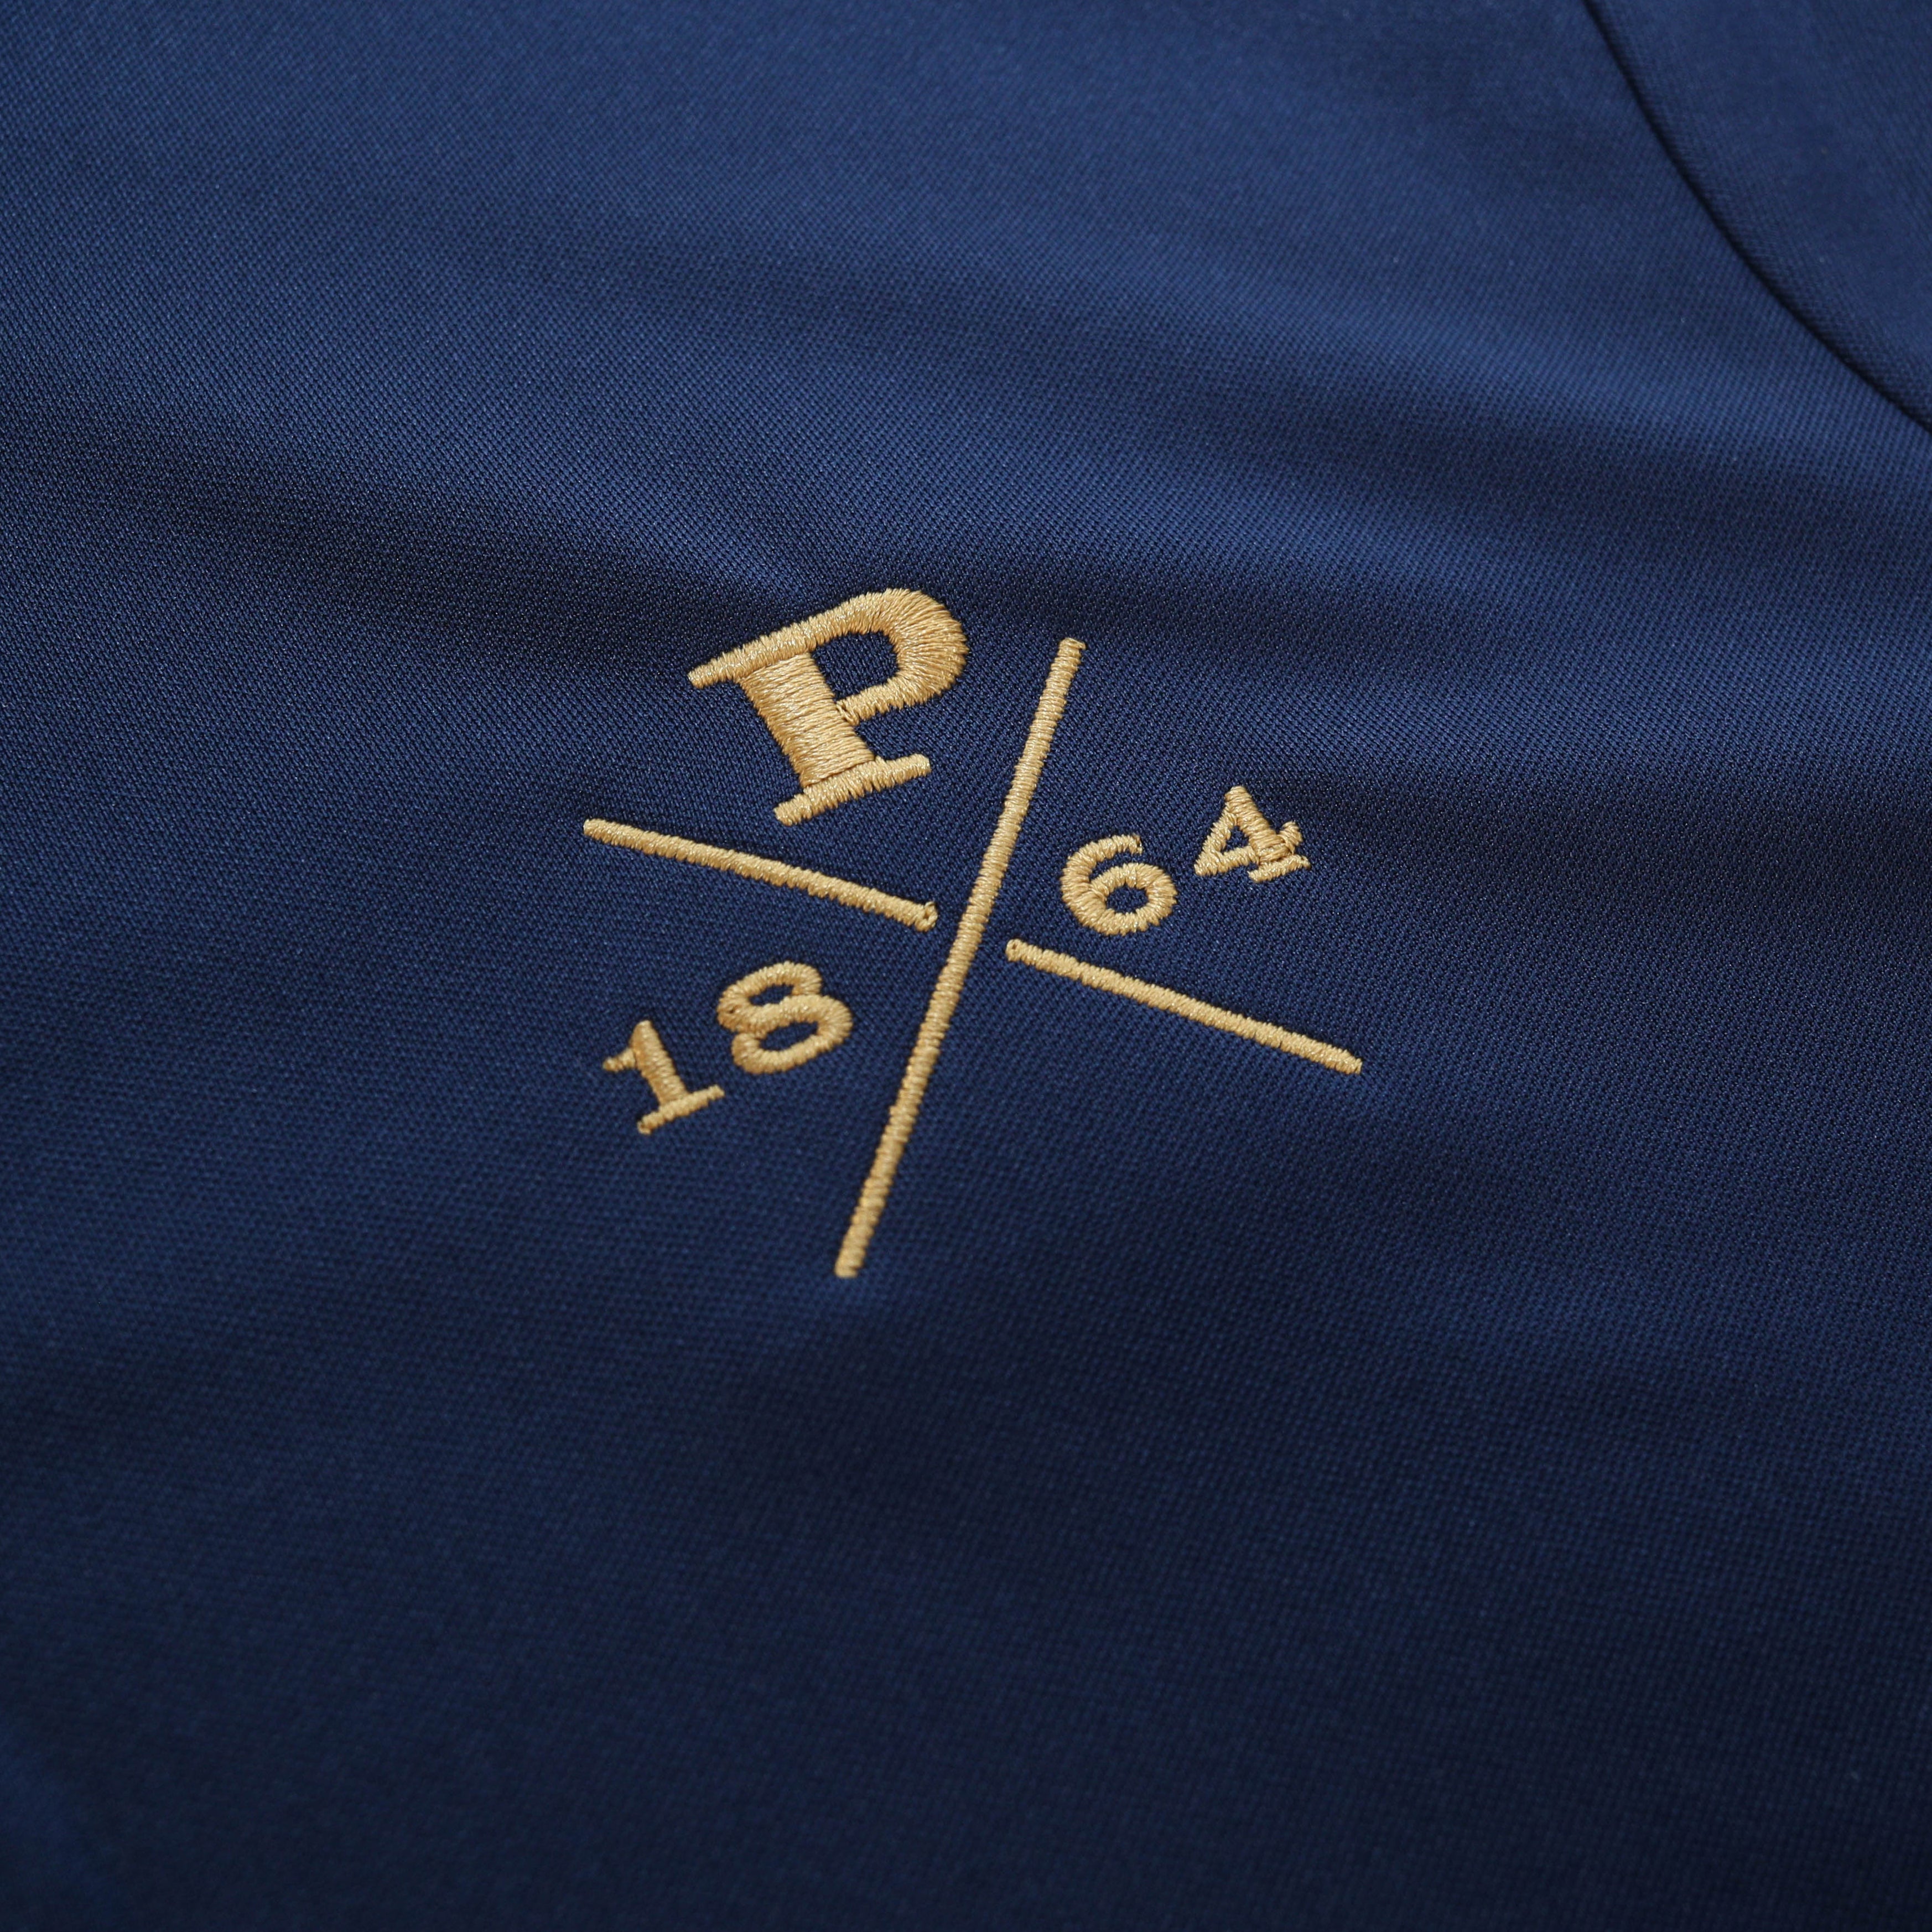 Nike 1864 Peddie Performance Polo Shirt